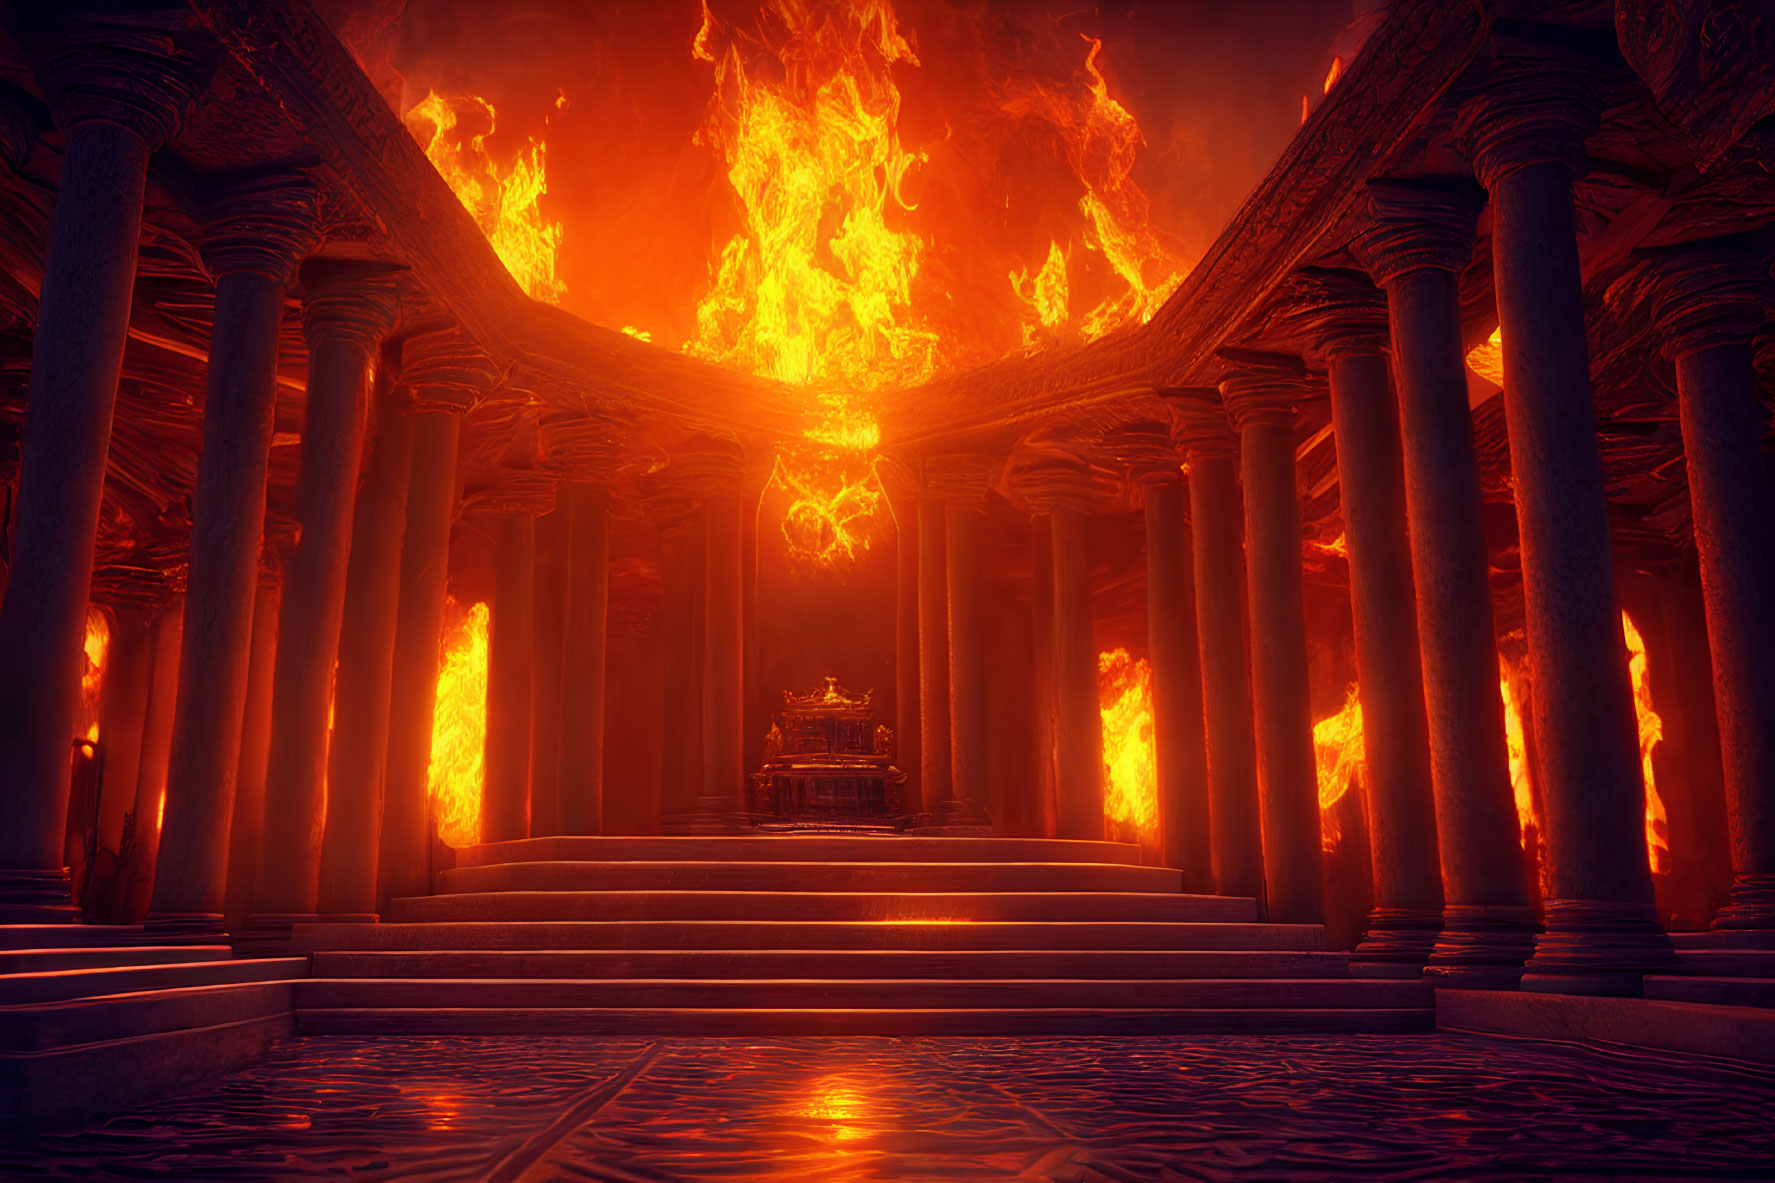 Towering columns, fiery glow, ominous figure on throne in eerie hall